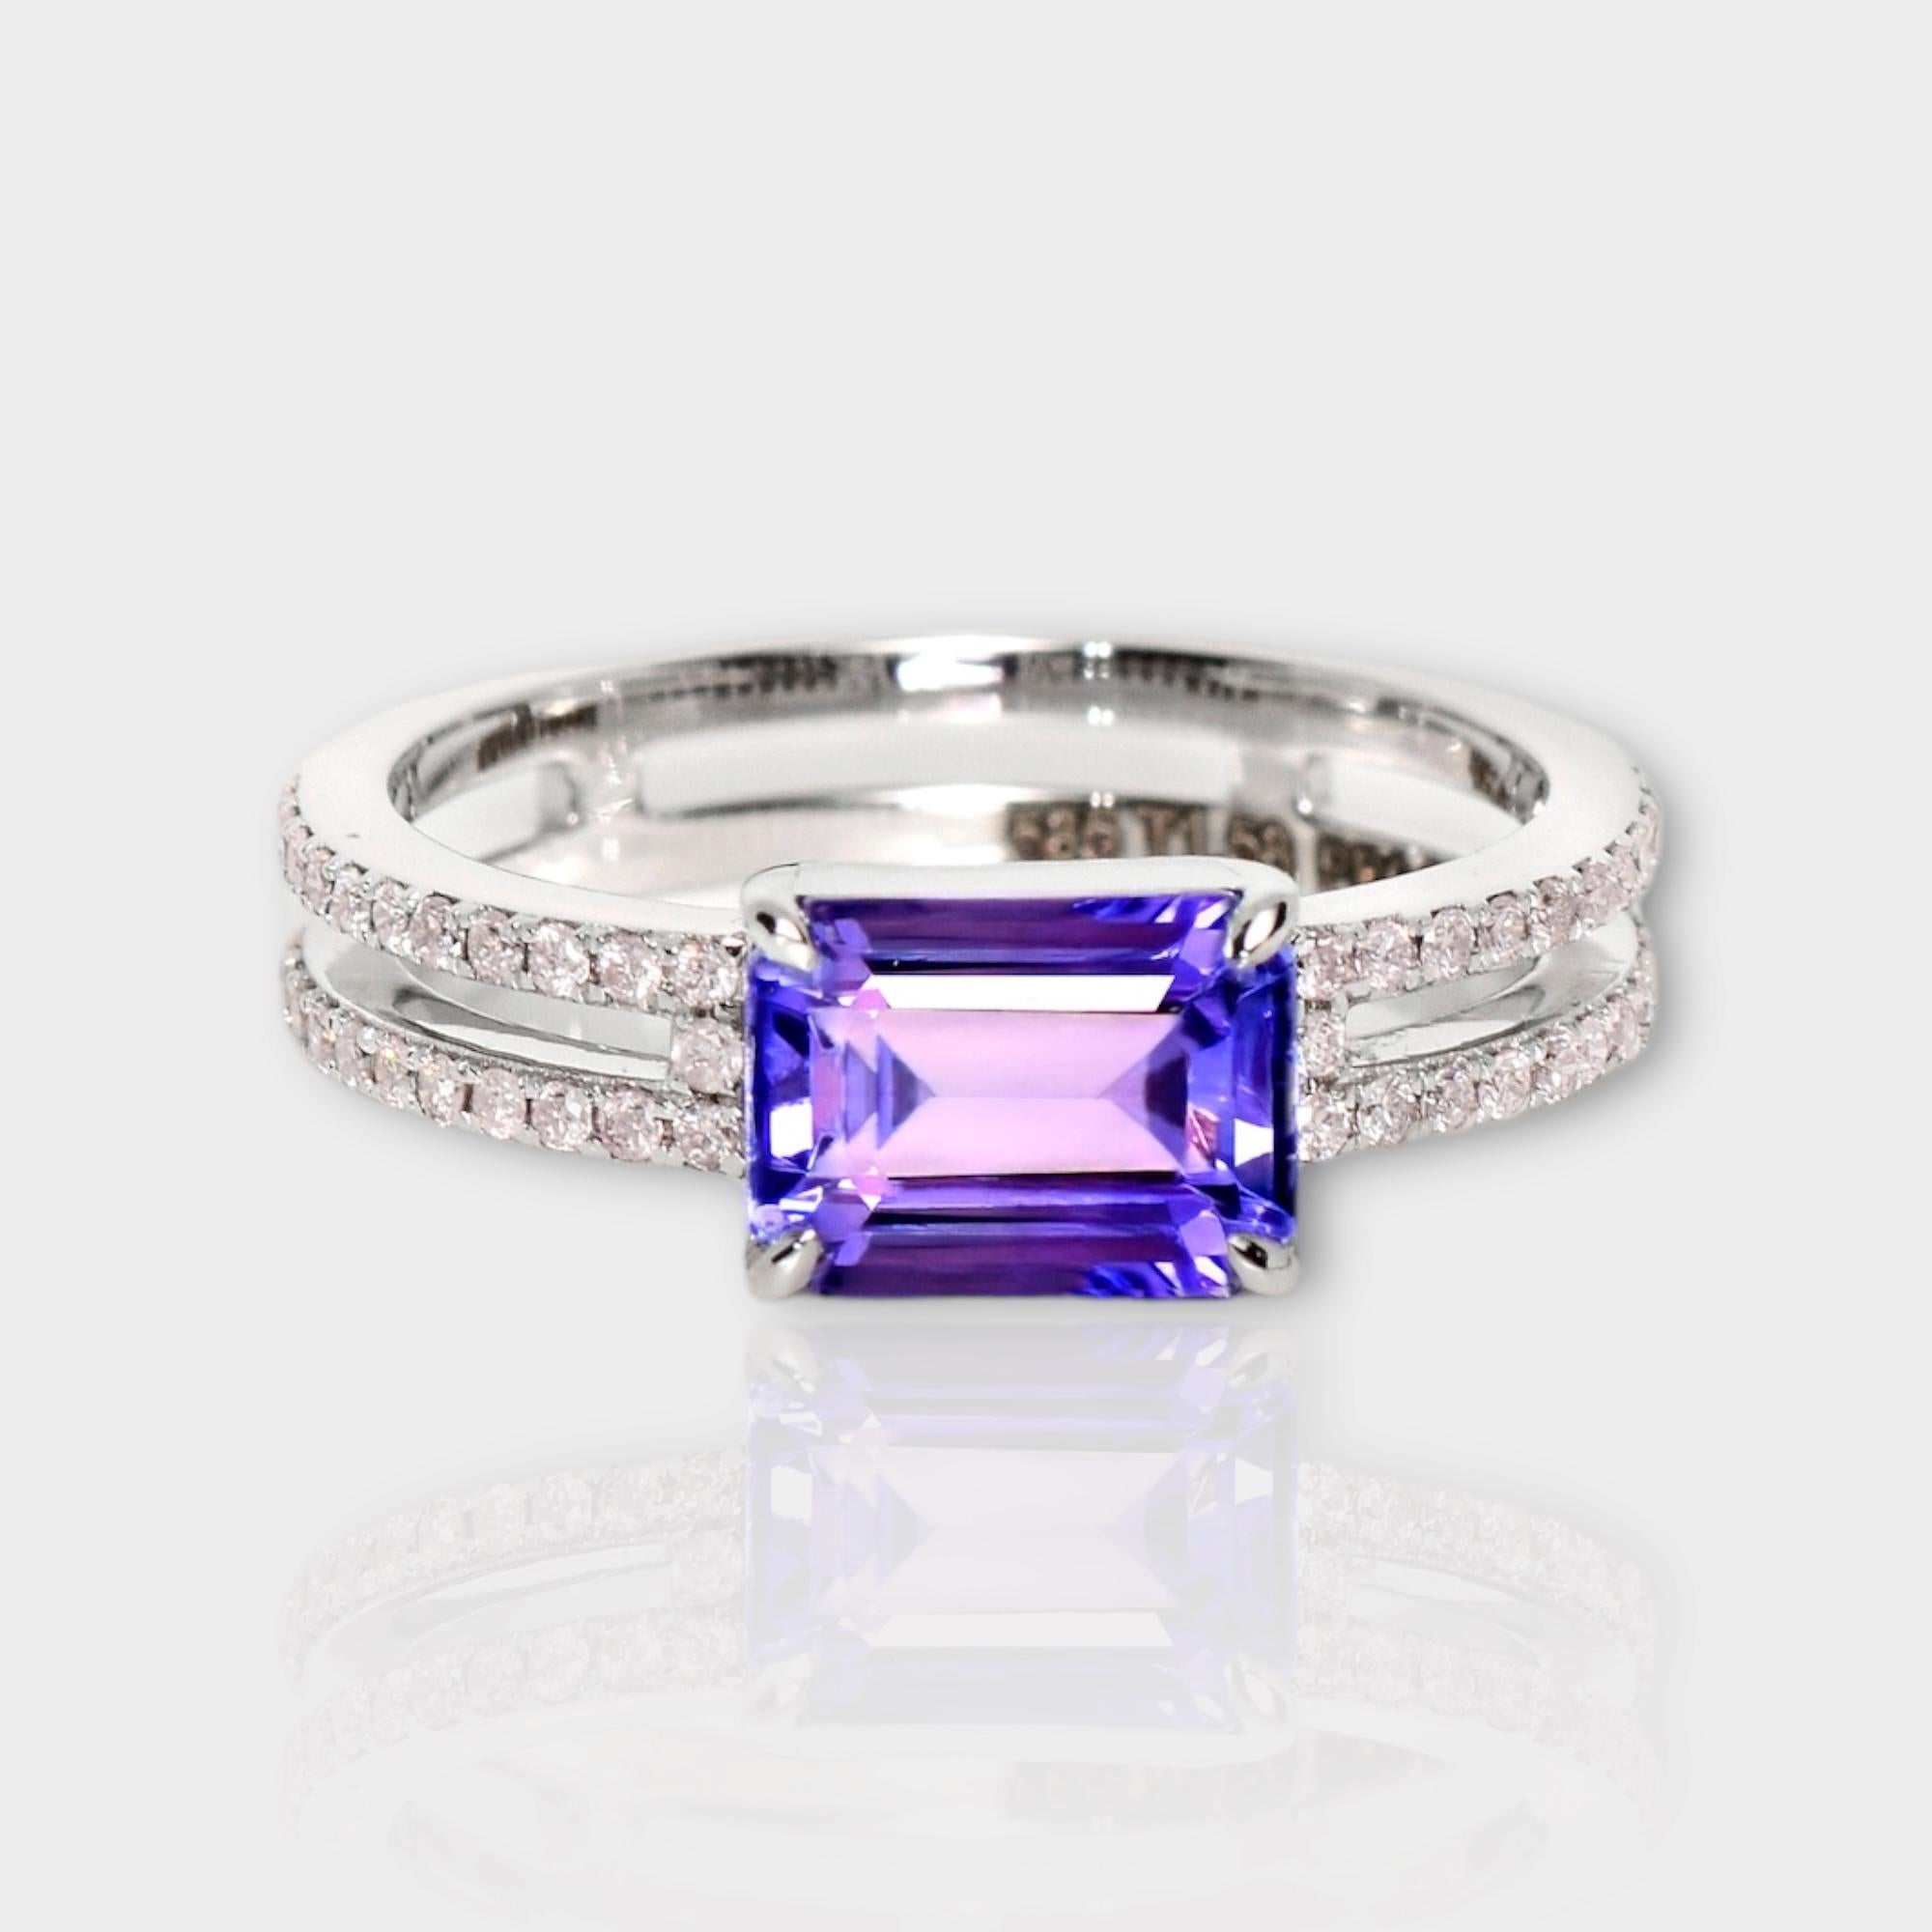 *IGI 14K 1.58 ct Tanzanite&Diamant rose Bague de fiançailles Antique Art Deco Style*
La tanzanite naturelle d'un violet bleuté intense, pesant 1,58 ct, est la pierre centrale entourée de diamants roses naturels pesant 0,25 ct sur le bracelet en or